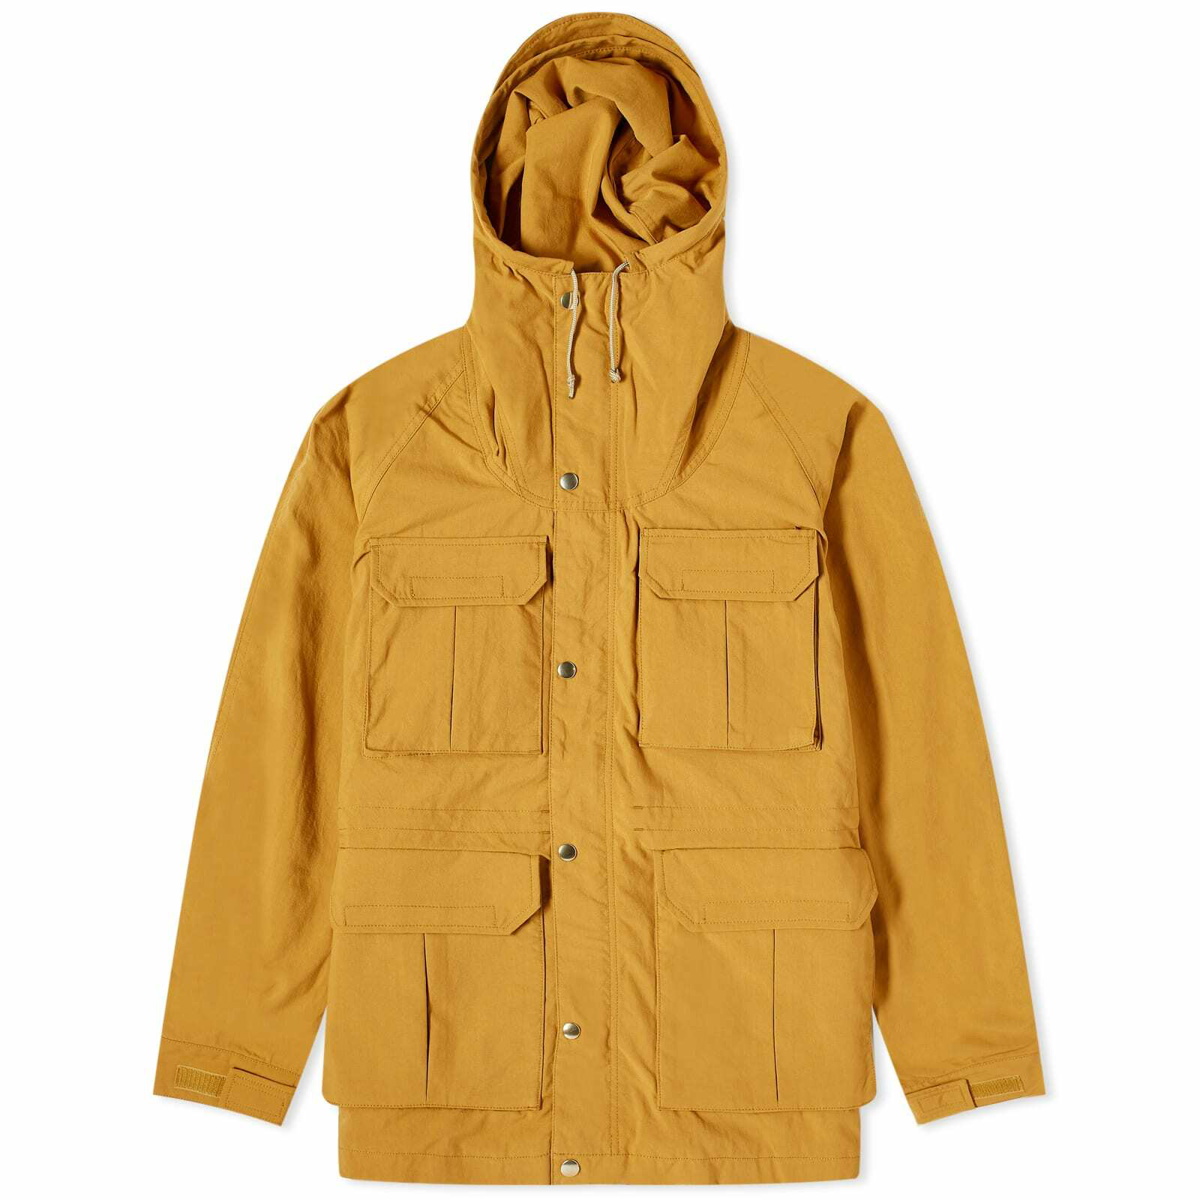 Beams Plus Men's Nylon Mountain Parka Jacket in Mustard